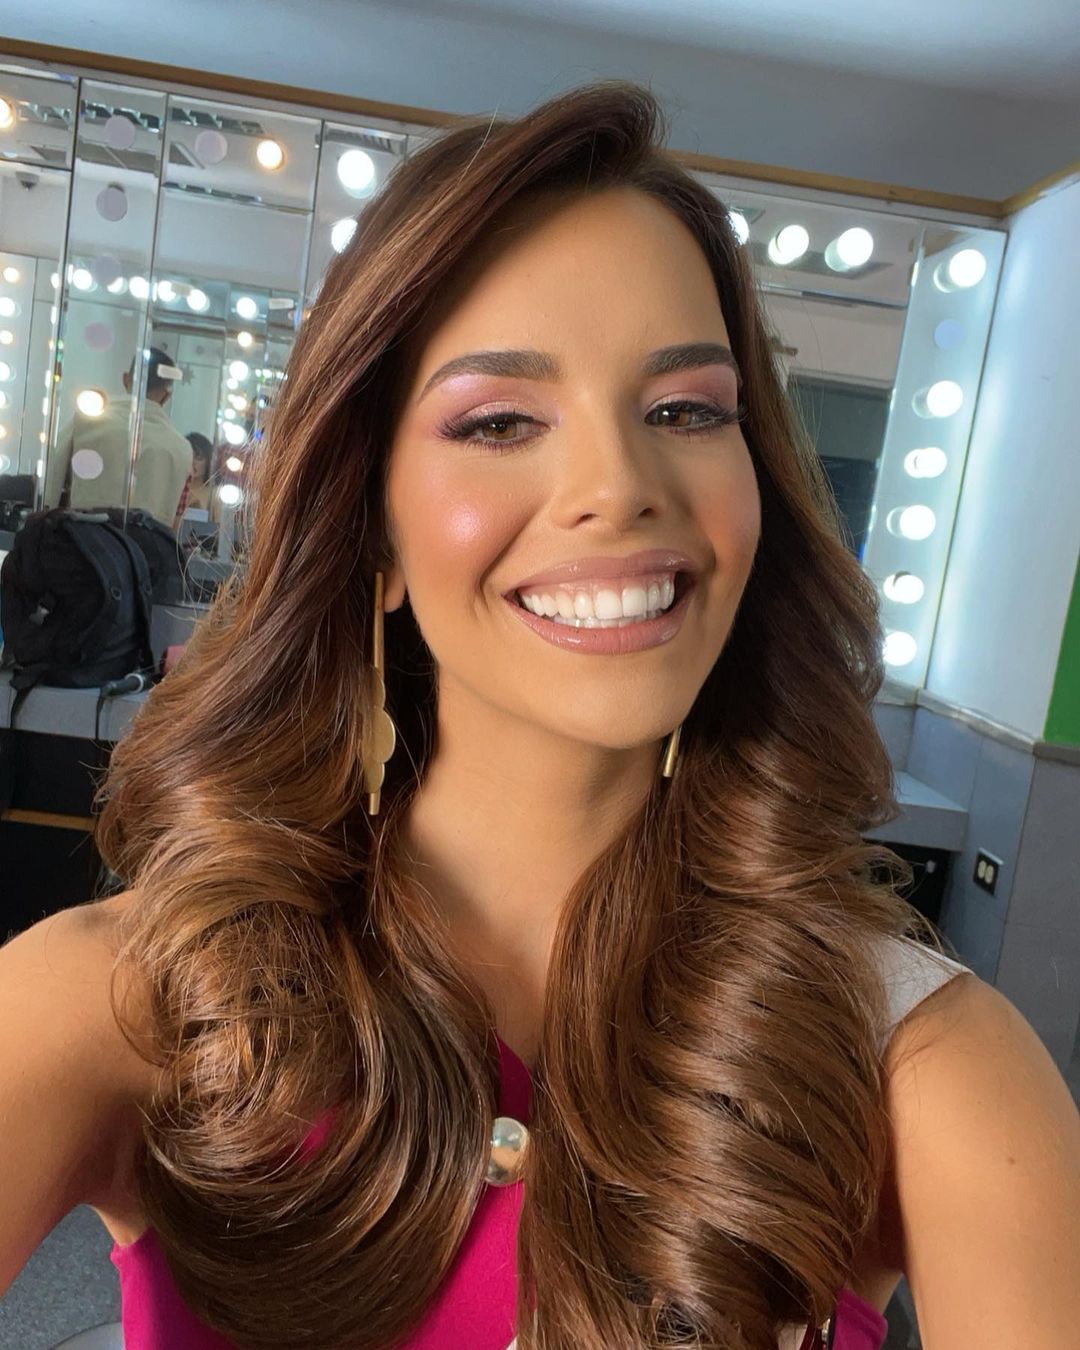 Selfi de Amanda Dudamel, hija de Rafael Dudamel que ganó Miss Venezuela